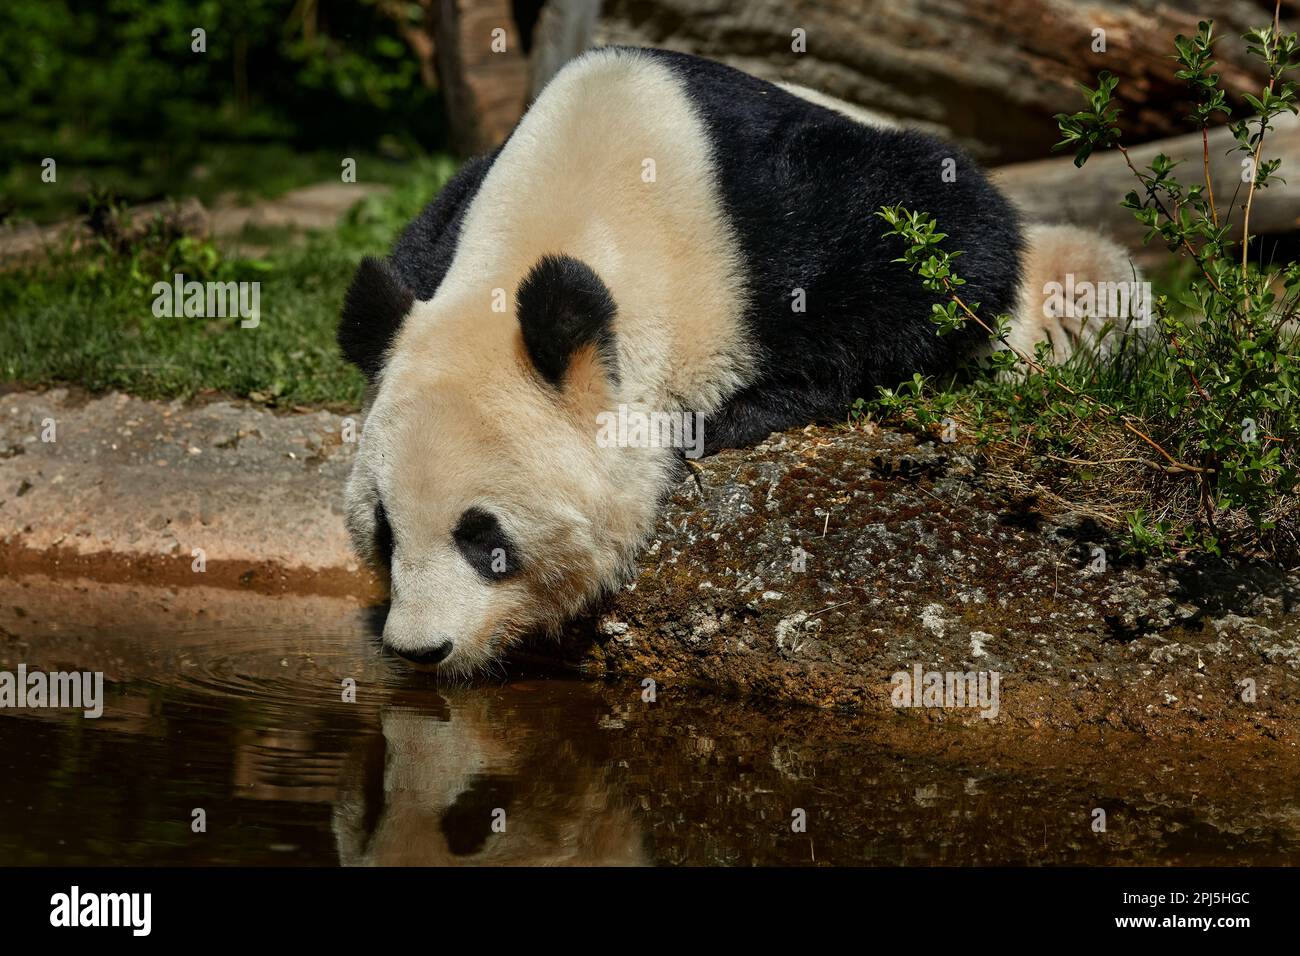 Verhalten von Pandabären im natürlichen Lebensraum. Porträt des Großen Pandas, Ailuropoda melanoleuca, die sich von Bambusbäumen in grüner Vegetation ernährt. Detail portra Stockfoto